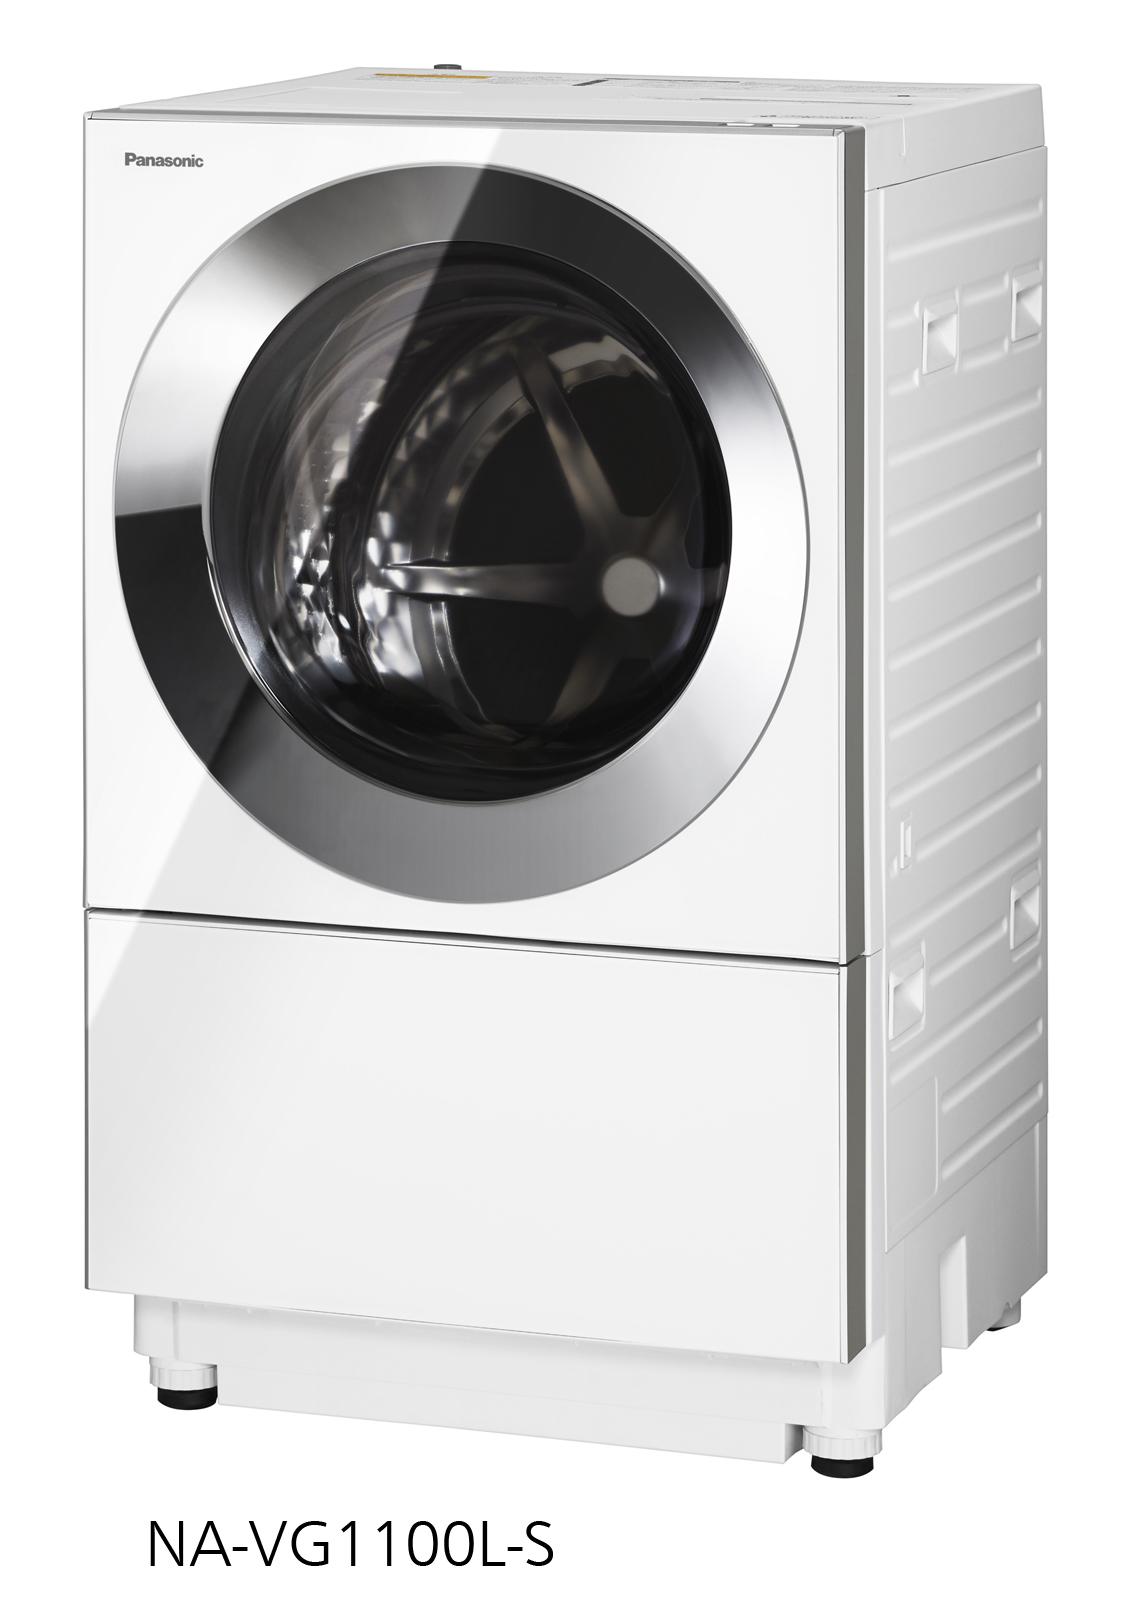 ななめドラム洗濯機Cuble5機種を発売 | 個人向け商品 | 製品・サービス 